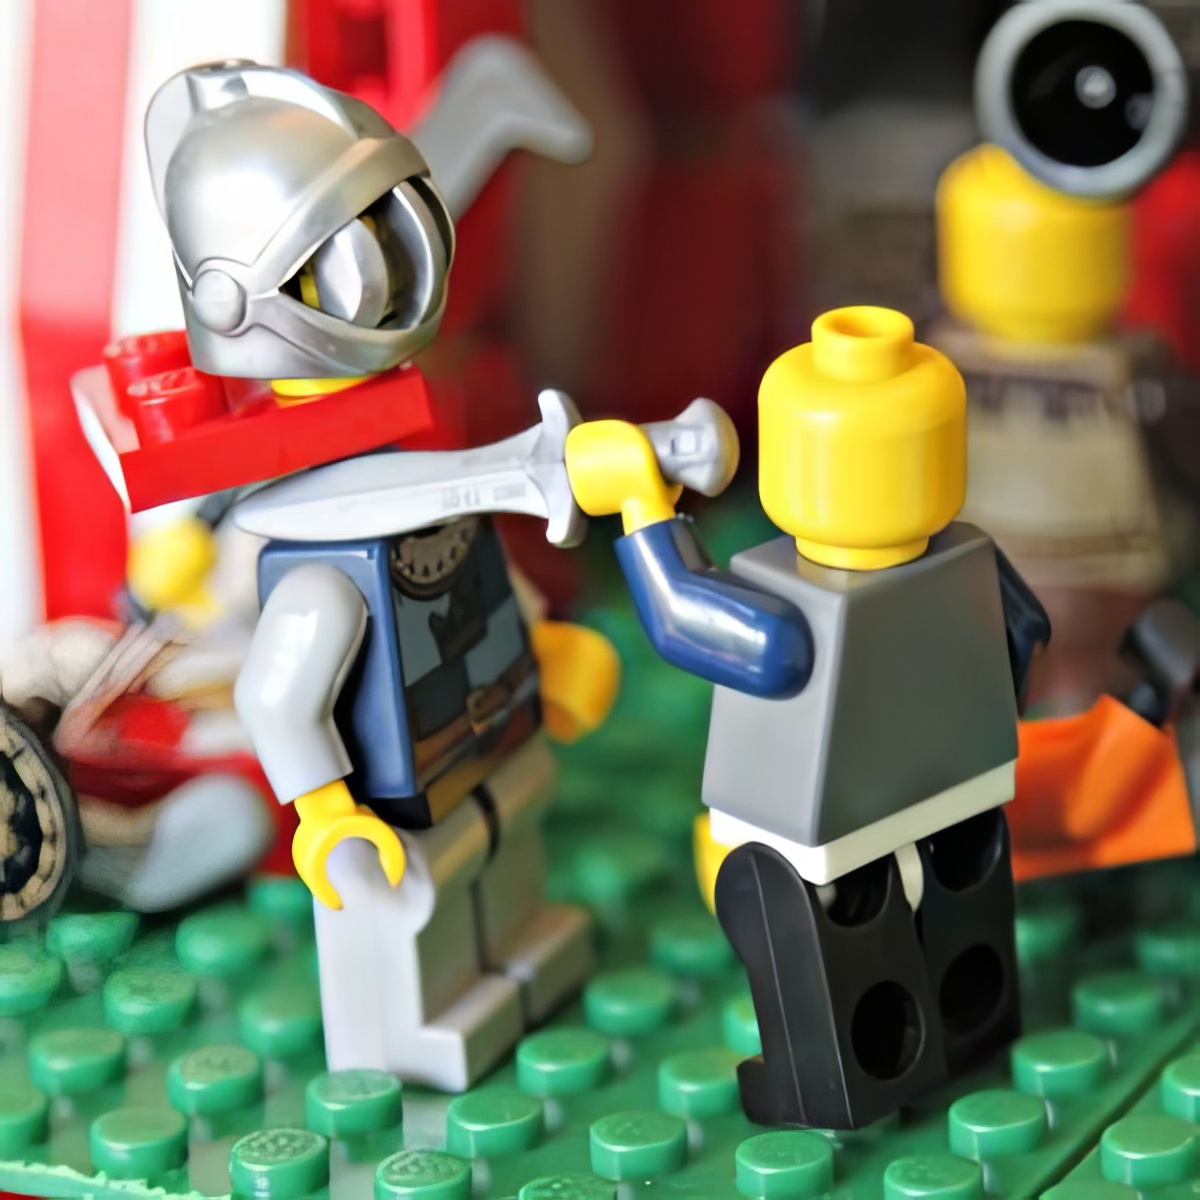 LEGO beheading